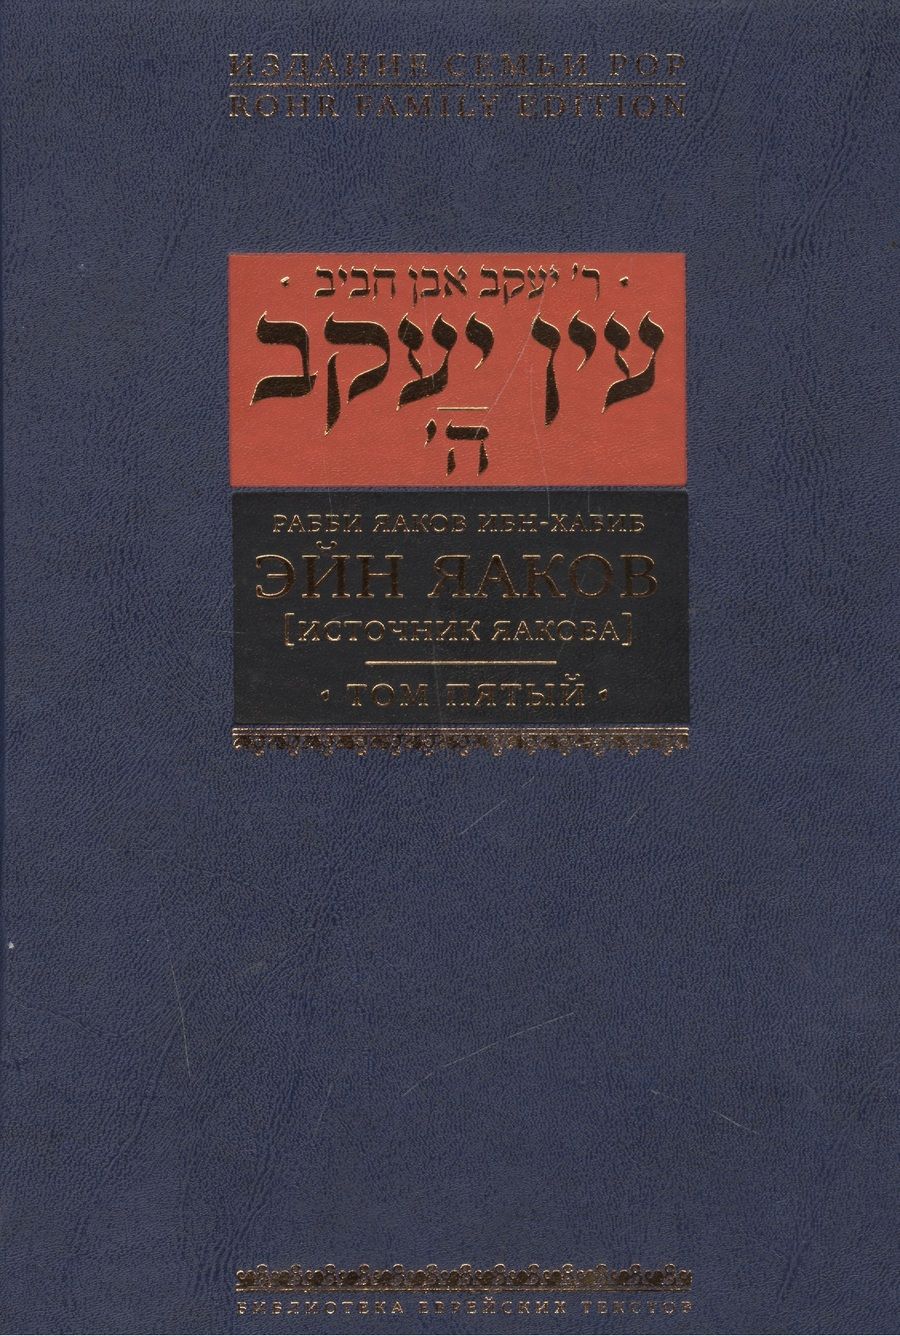 Обложка книги "Ибн-Хабиб: Эйн Яаков (источник Яакова) т.5"